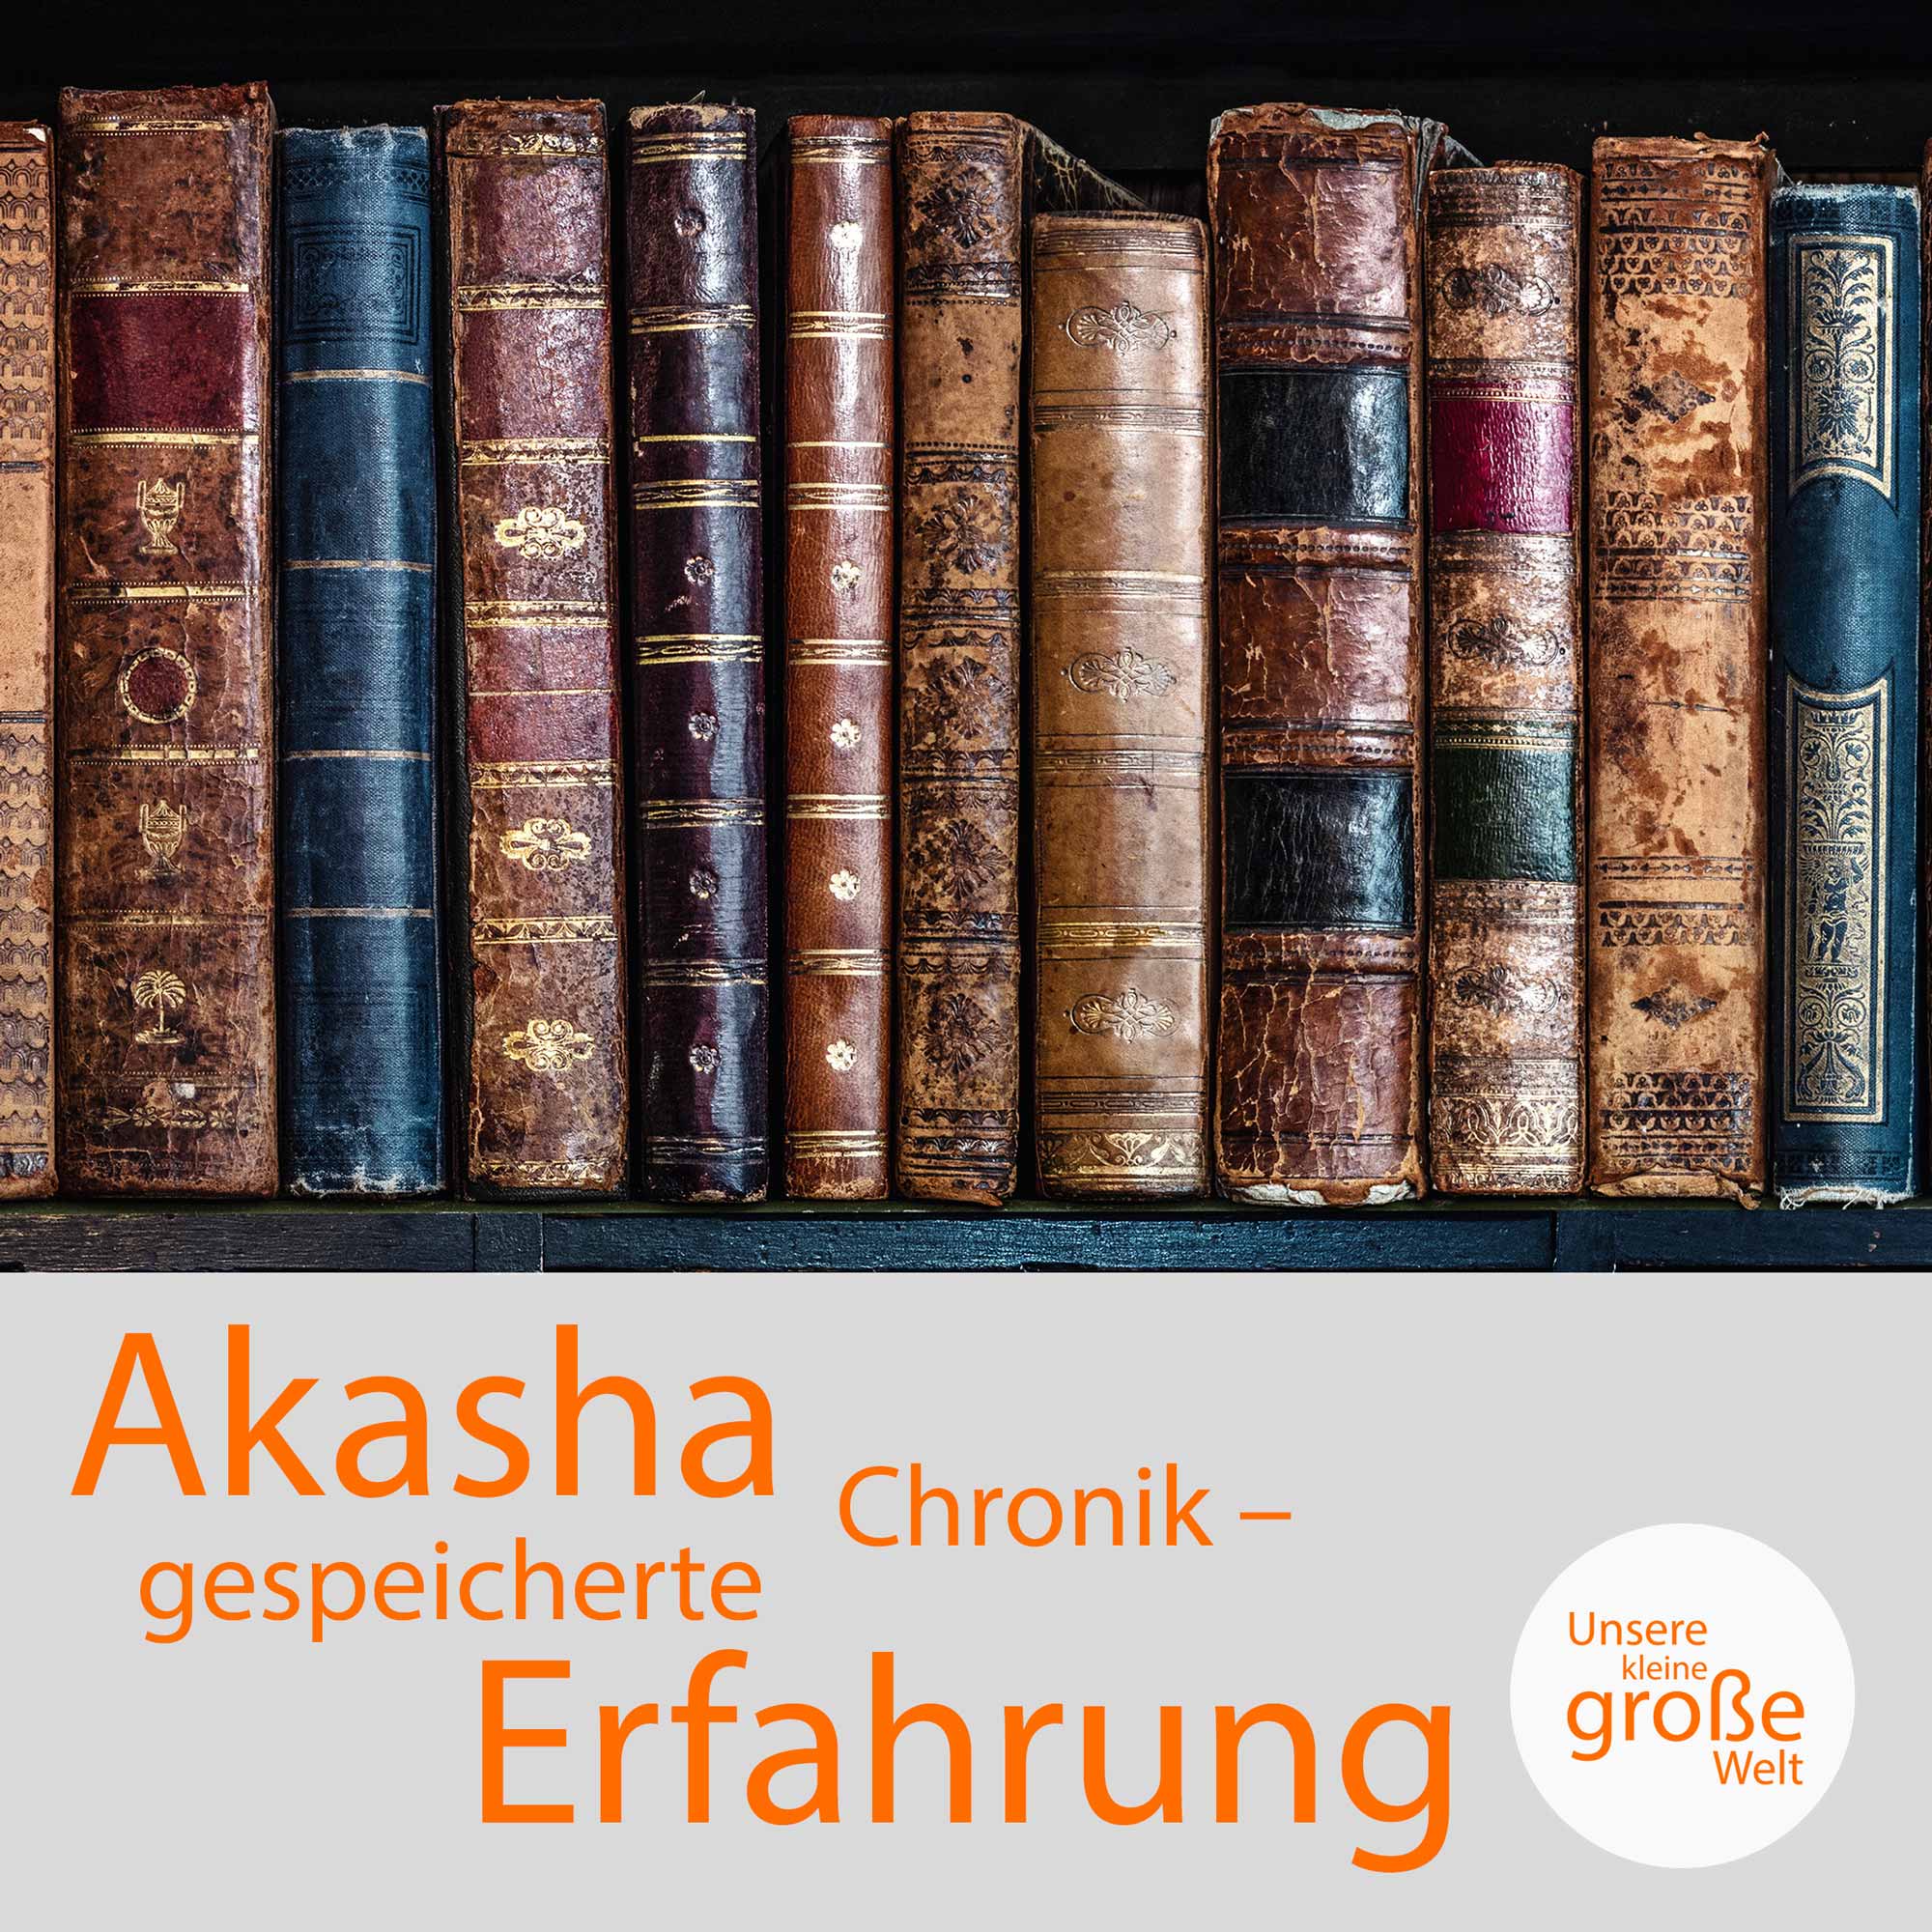 Unsere kleine, große Welt Folge 73: Akasha-Chronik – gespeicherte Erfahrung